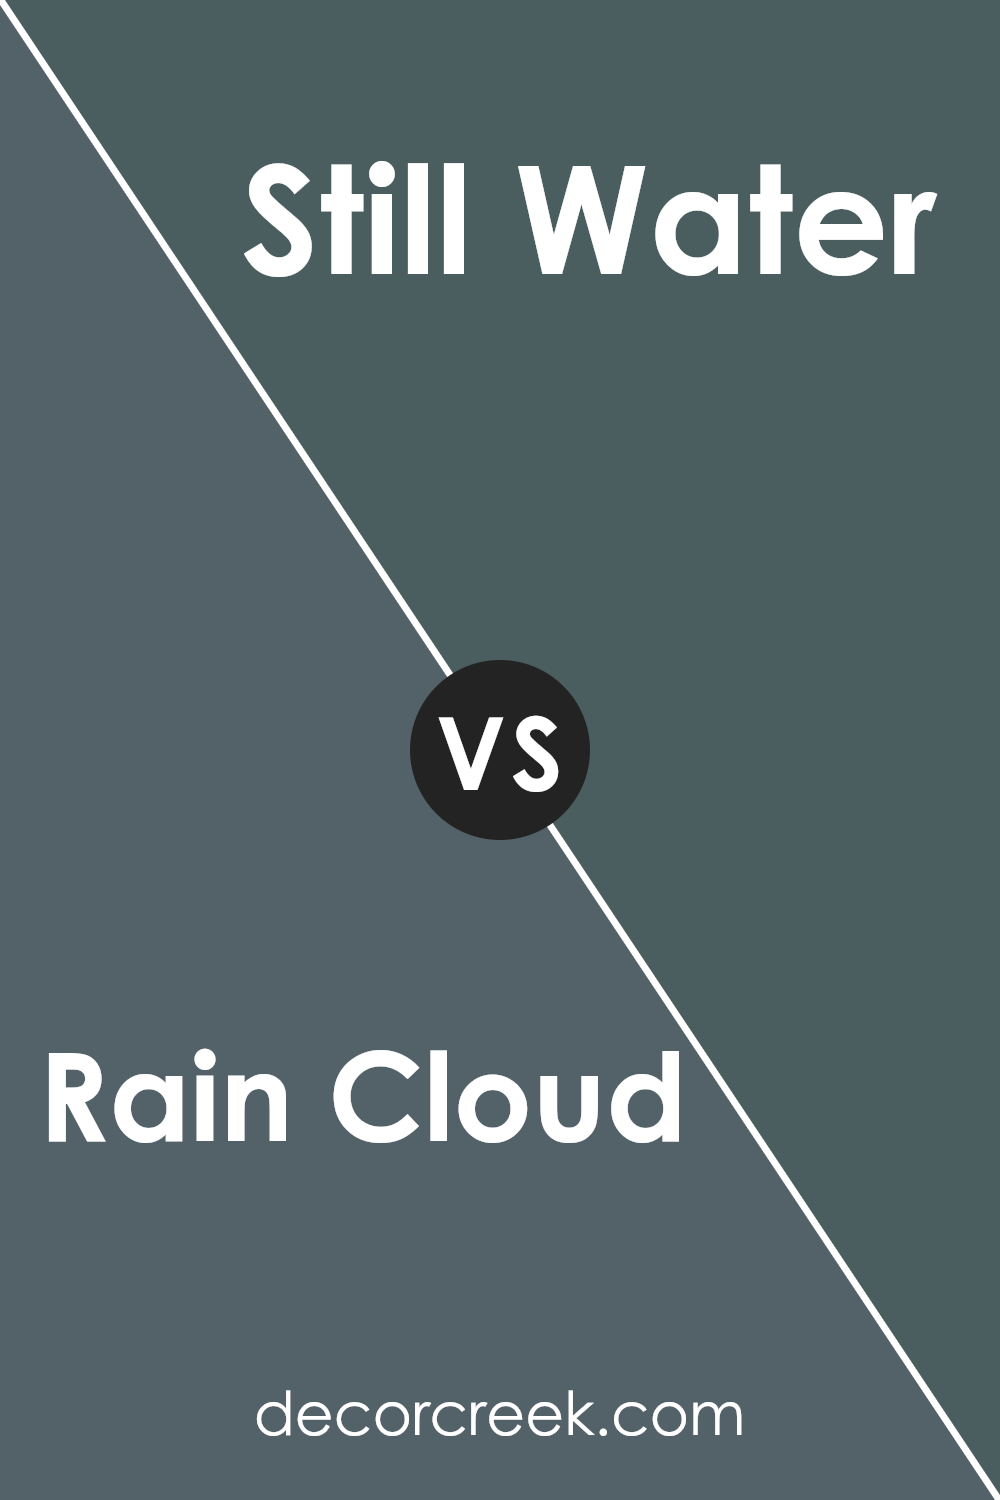 rain_cloud_sw_9639_vs_still_water_sw_6223